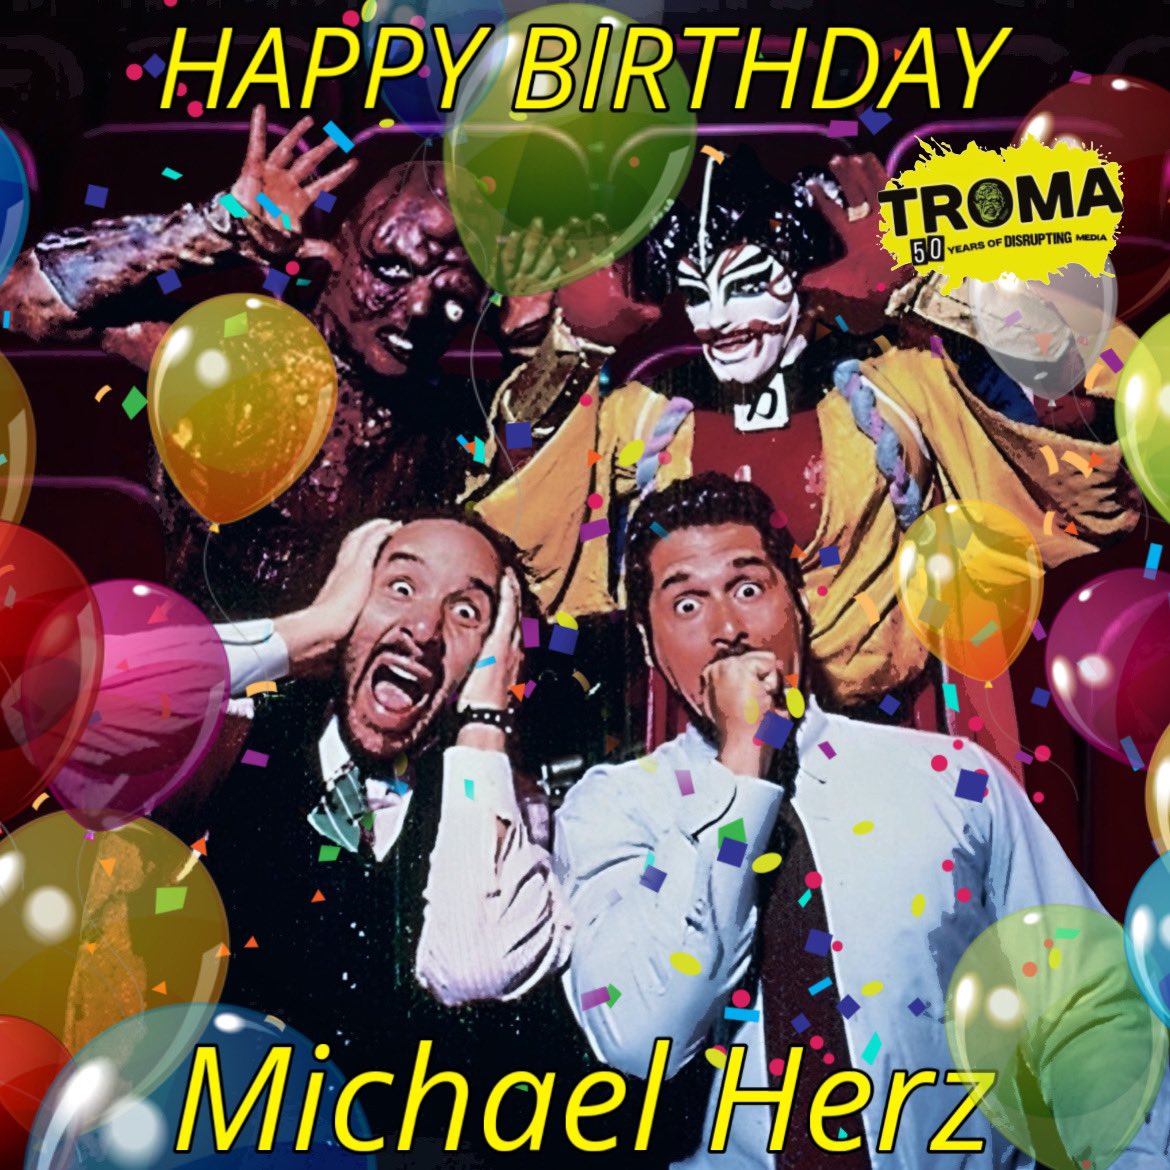 Happiest Birthday !! #MichaelHerz #TromaEntertainment